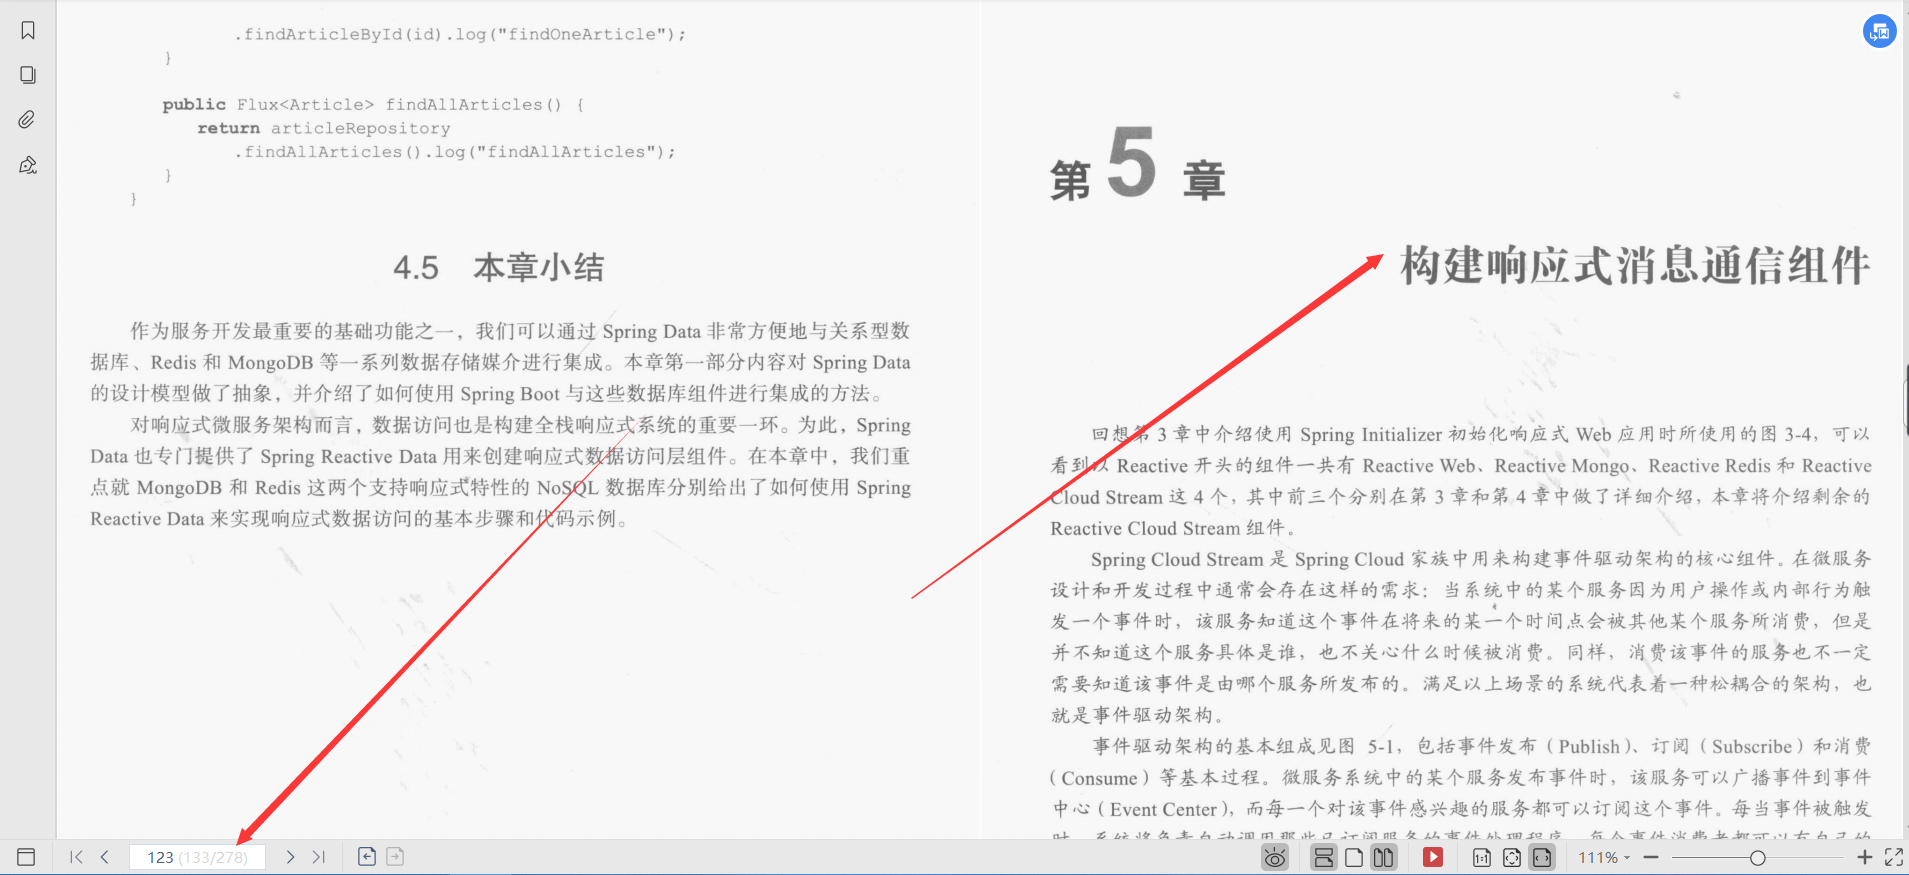 Alibaba lanza la documentación Boot2Cloud del microservicio receptivo de Spring